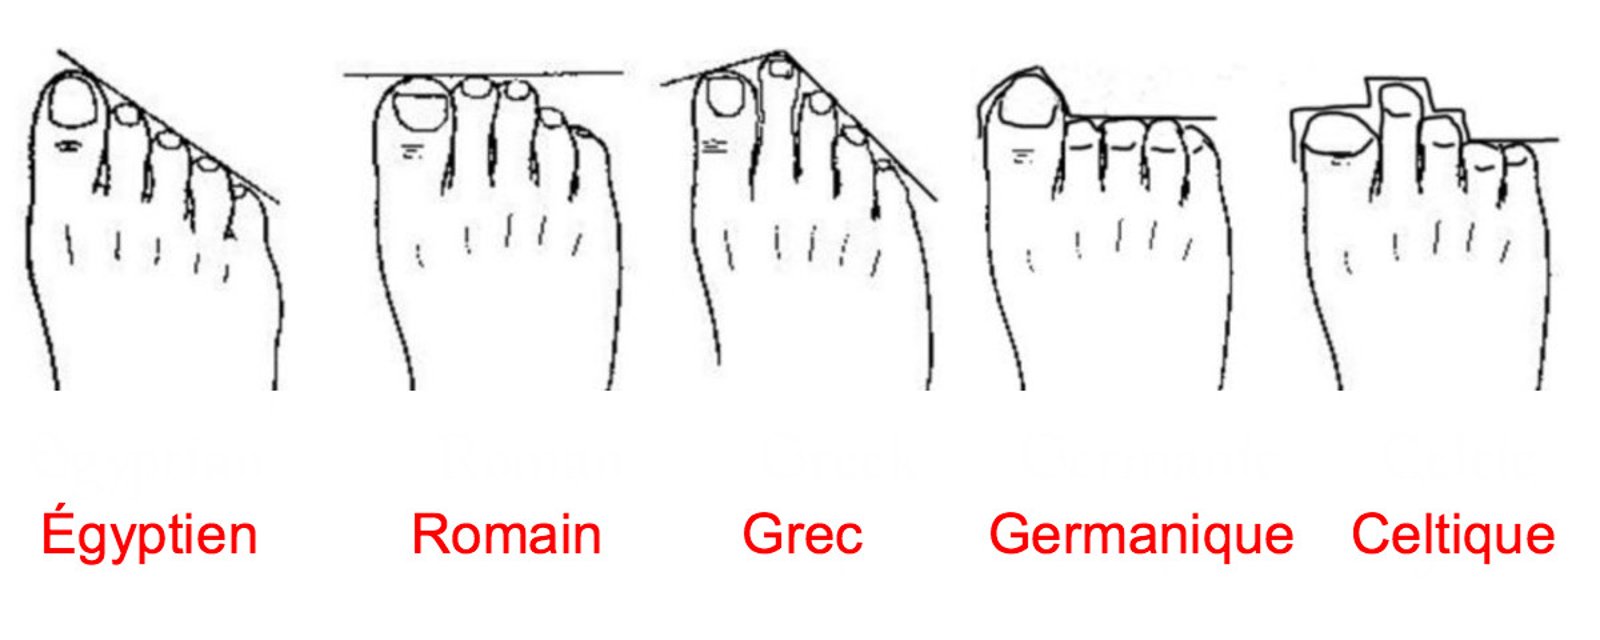 Ce que la forme de vos pieds révèle malgré vous sur votre personnalité!